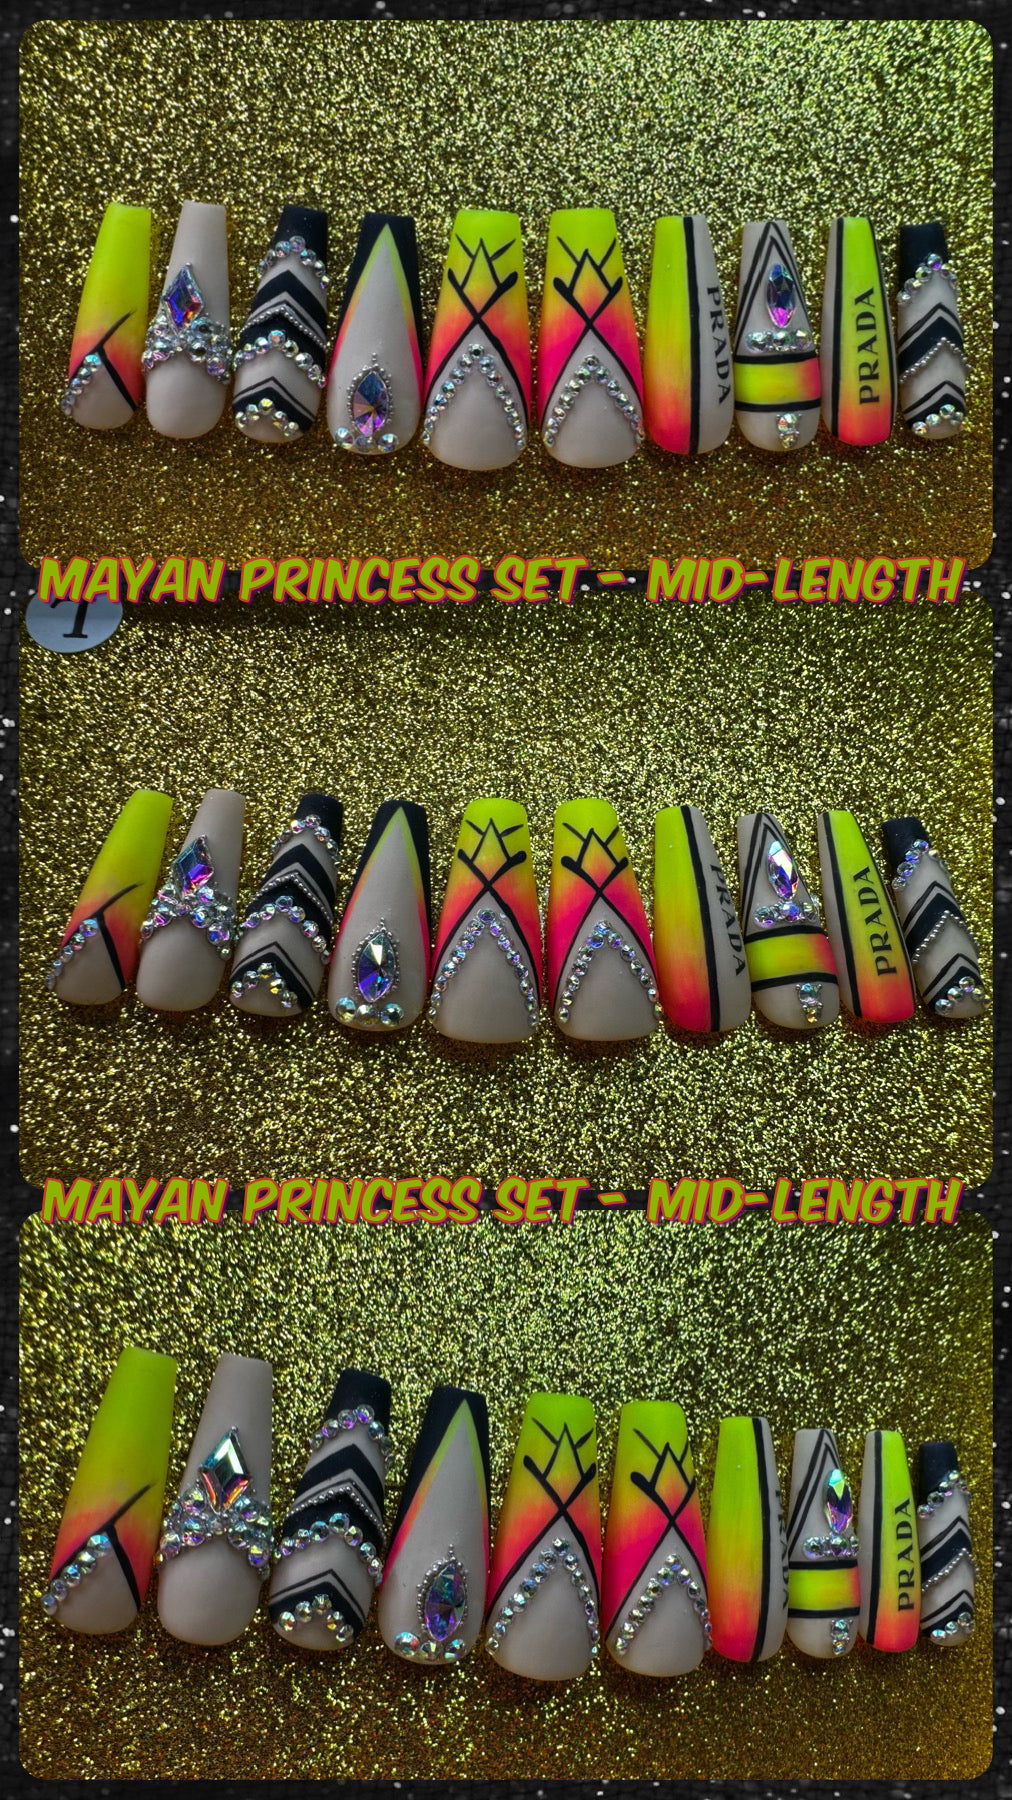 Mayan Princess - Handmade Press-On Nail Set